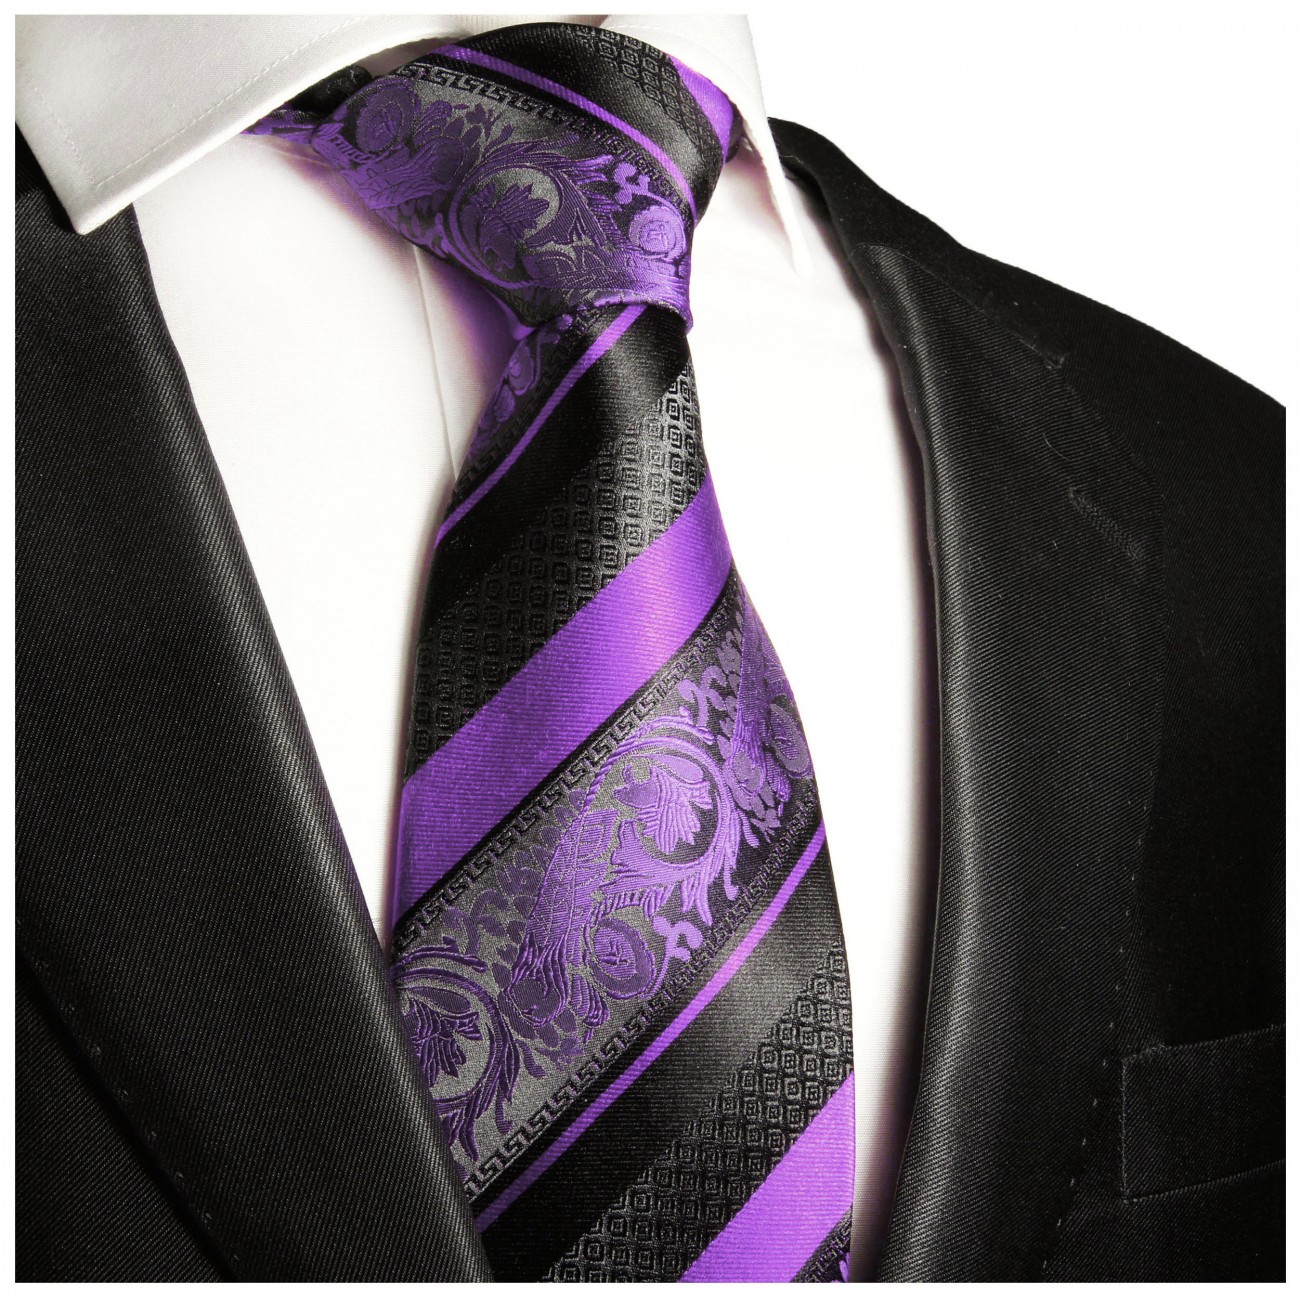 Violett lila schwarz gestreifte Krawatte 100% Seidenkrawatte